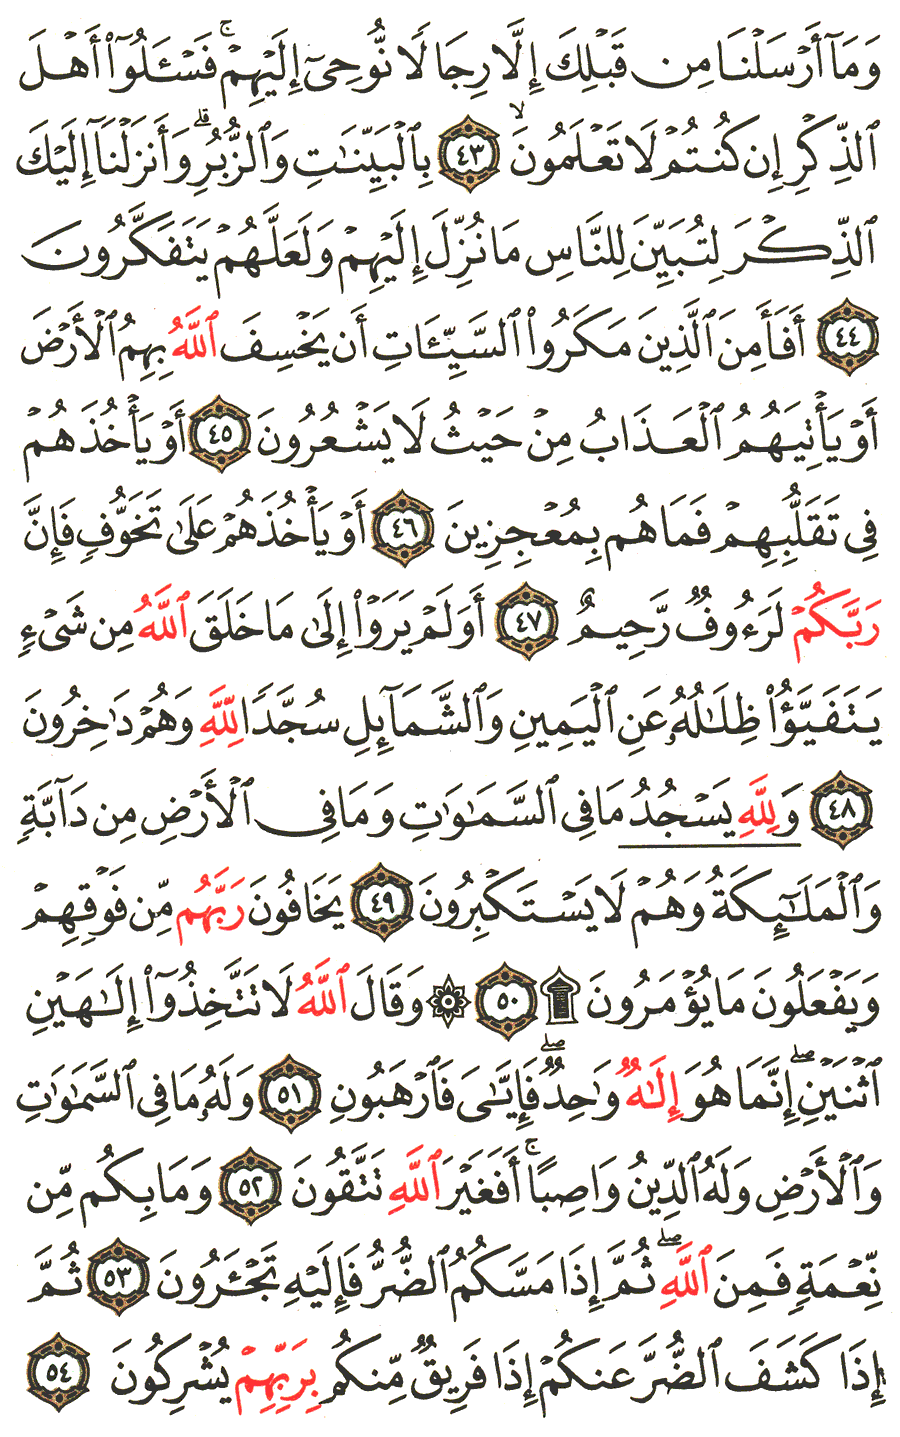 الصفحة رقم 272  من القرآن الكريم مكتوبة من المصحف